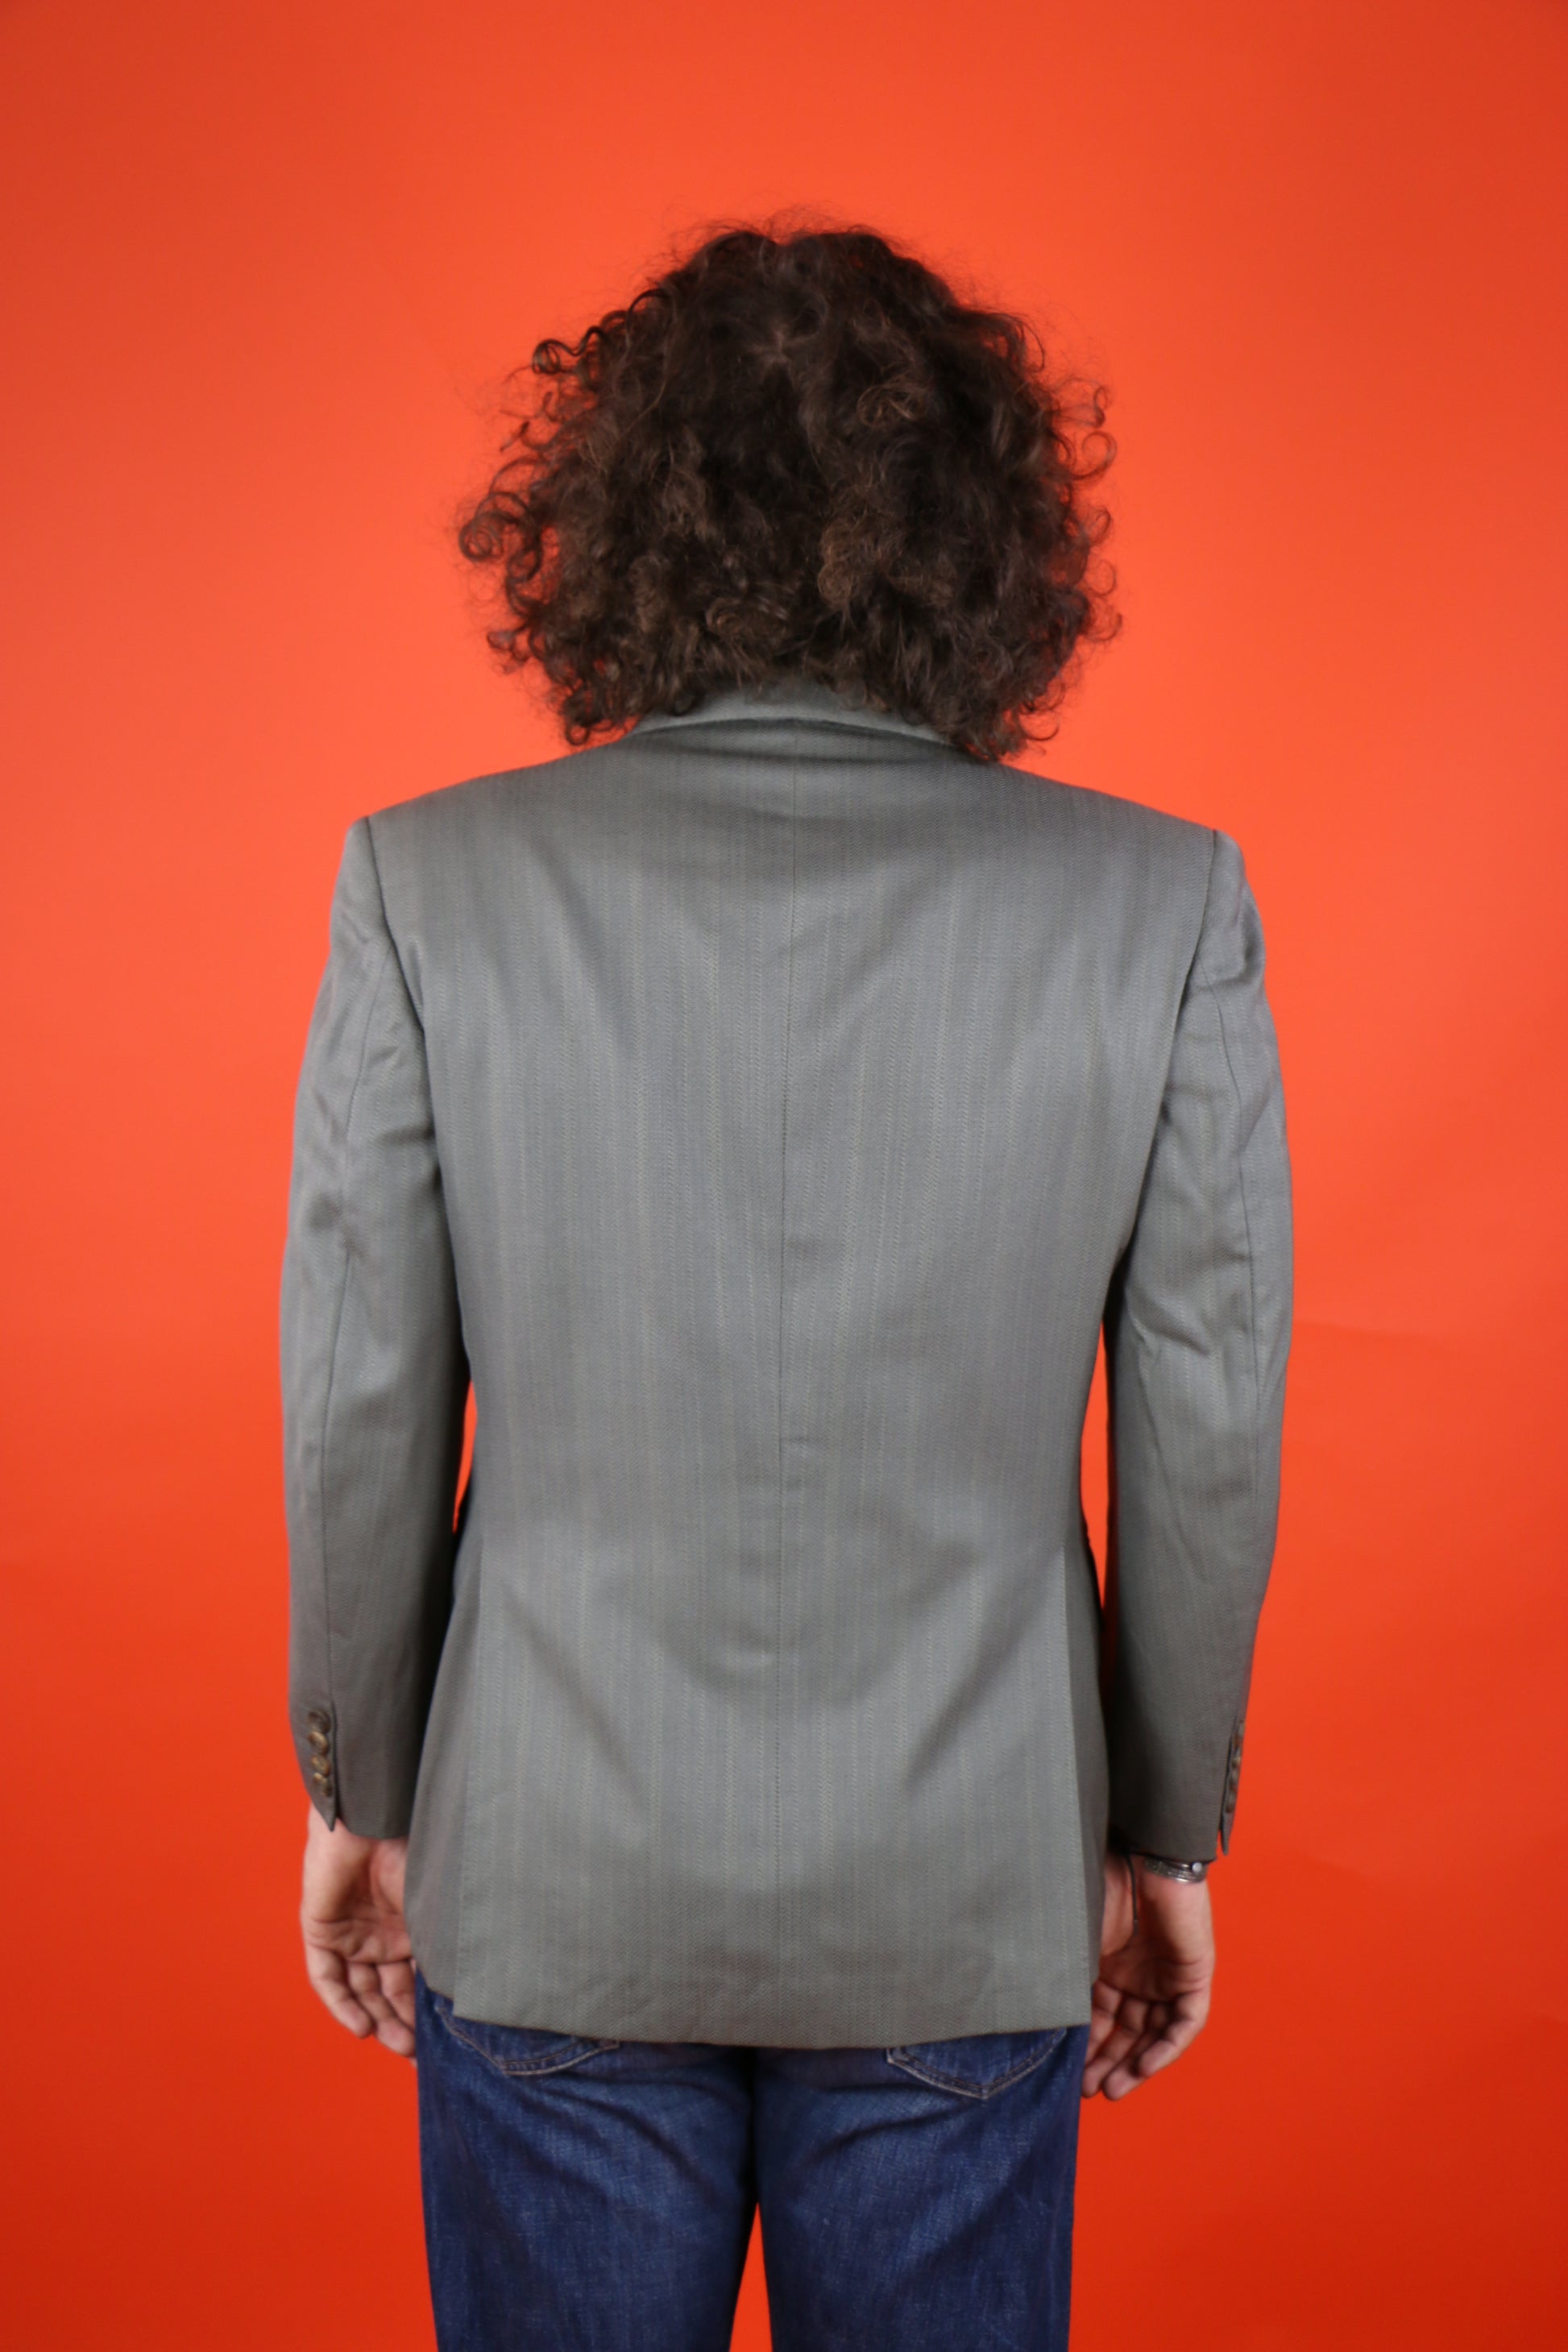 Burberrys Double Breast Suit Jacket - vintage clothing clochard92.com